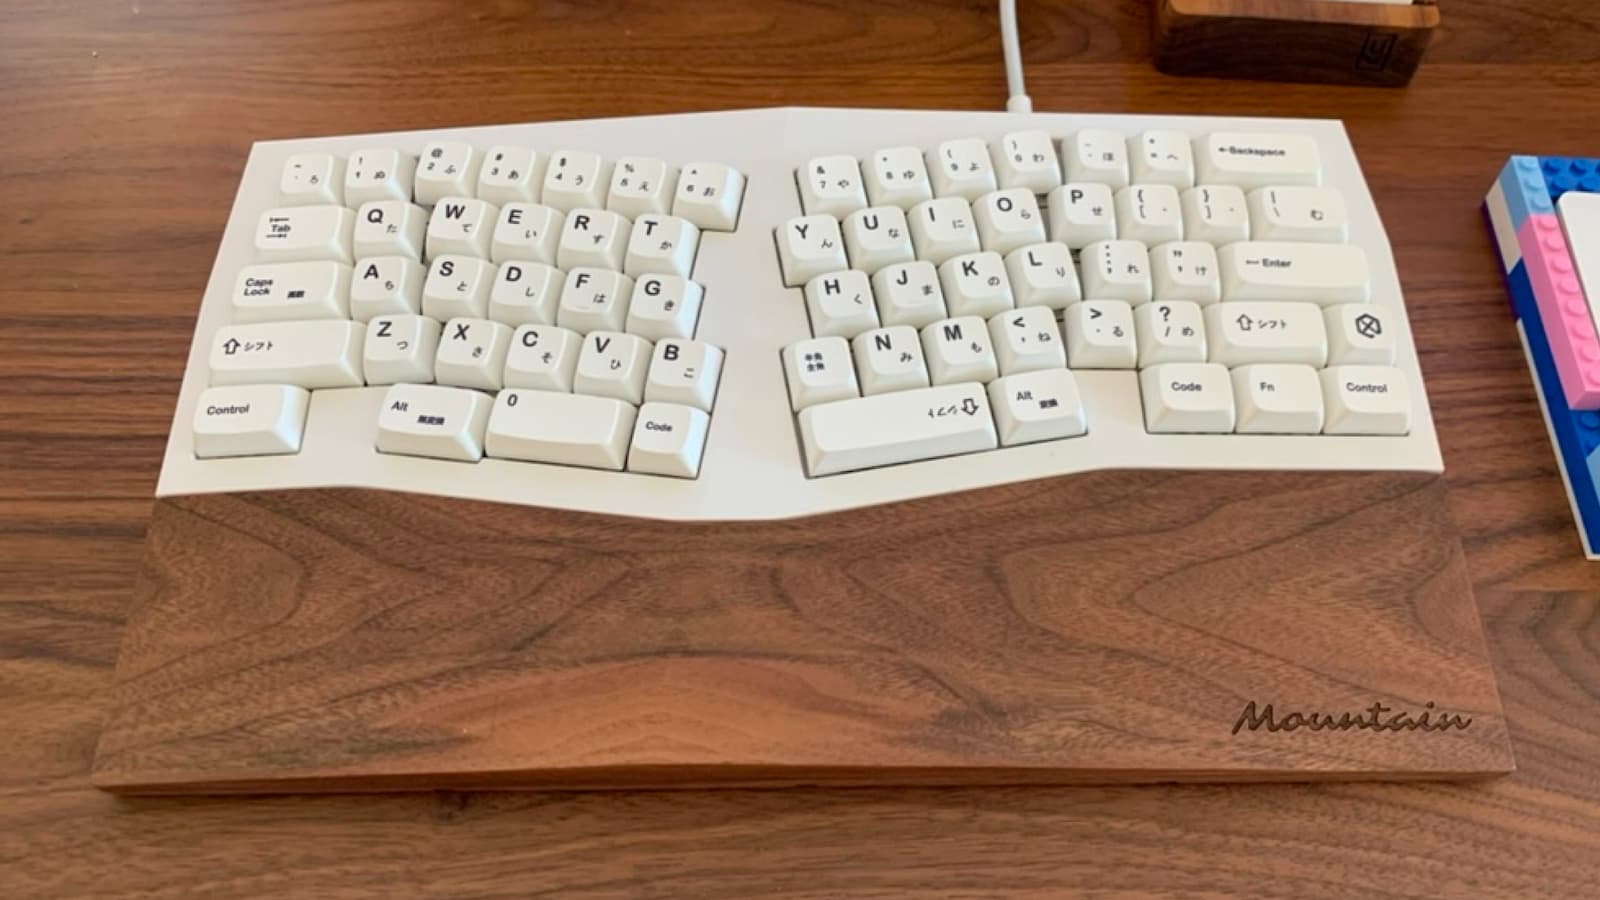 Alice-like ergonomic keyboard, split layout tented